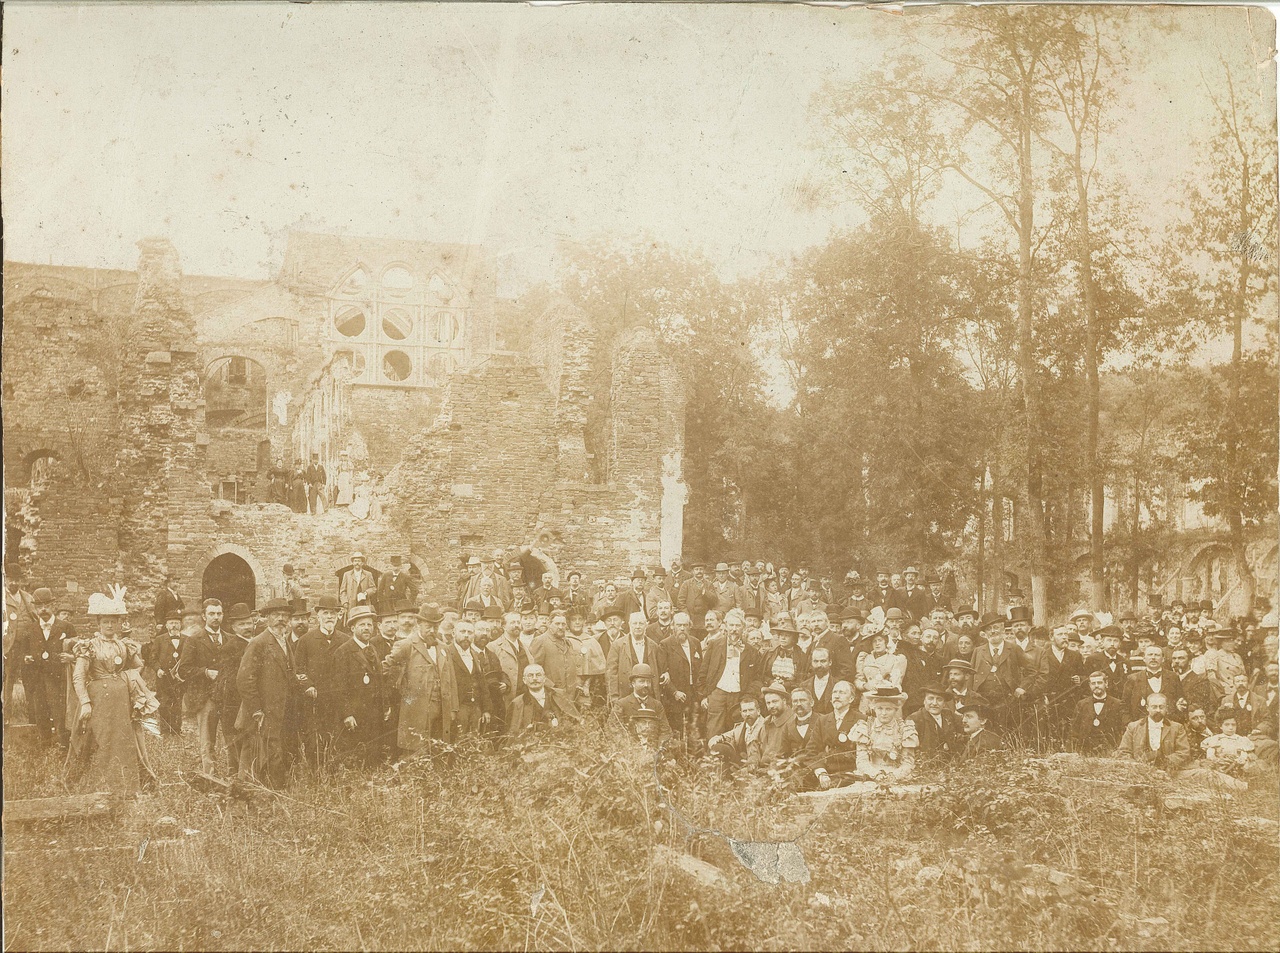 Foto van Dr. P.J.H. Cuypers met gezamenlijk personeel van de Cuypers' Kunstwerkplaatsen bij een bezoek aan een ruïne.